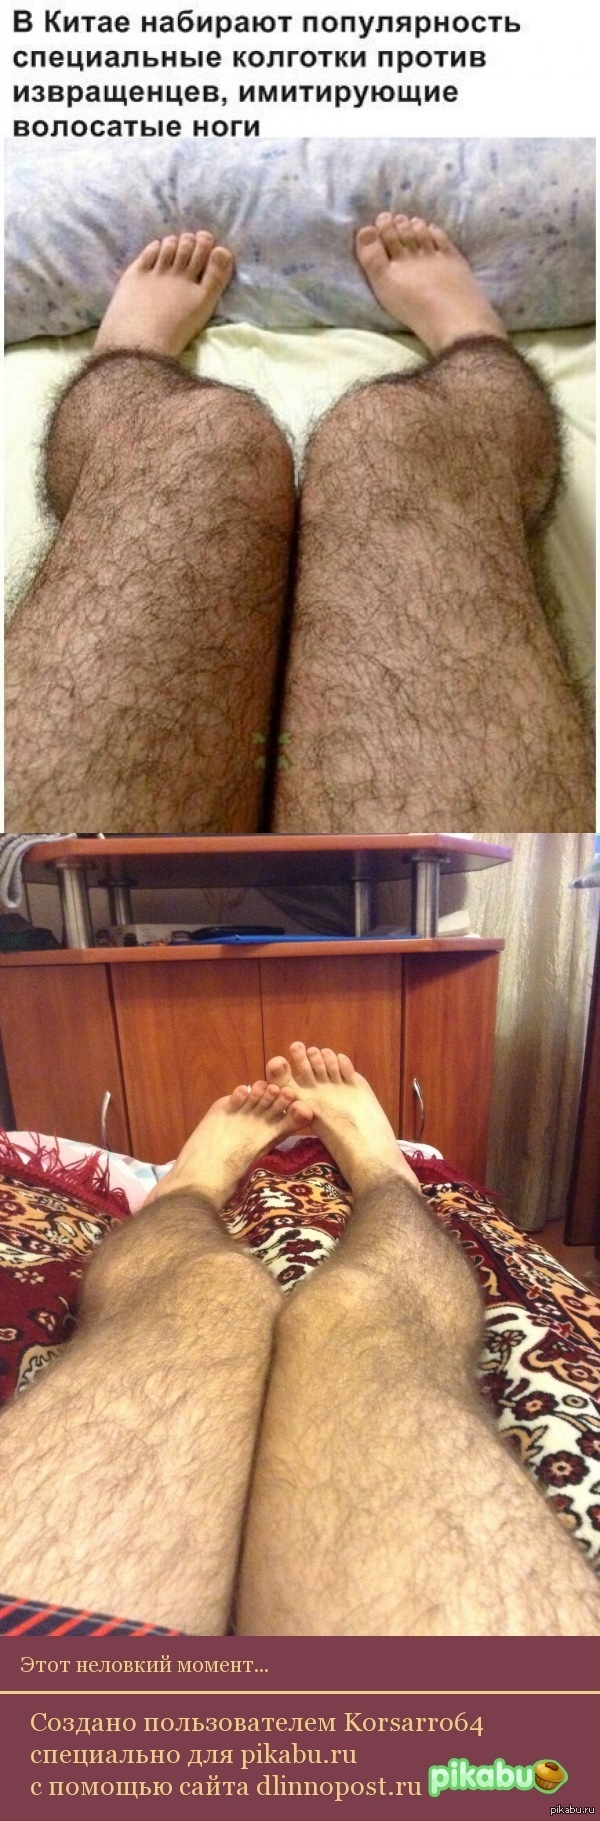 волосатые ноги во сне сонник фото 103